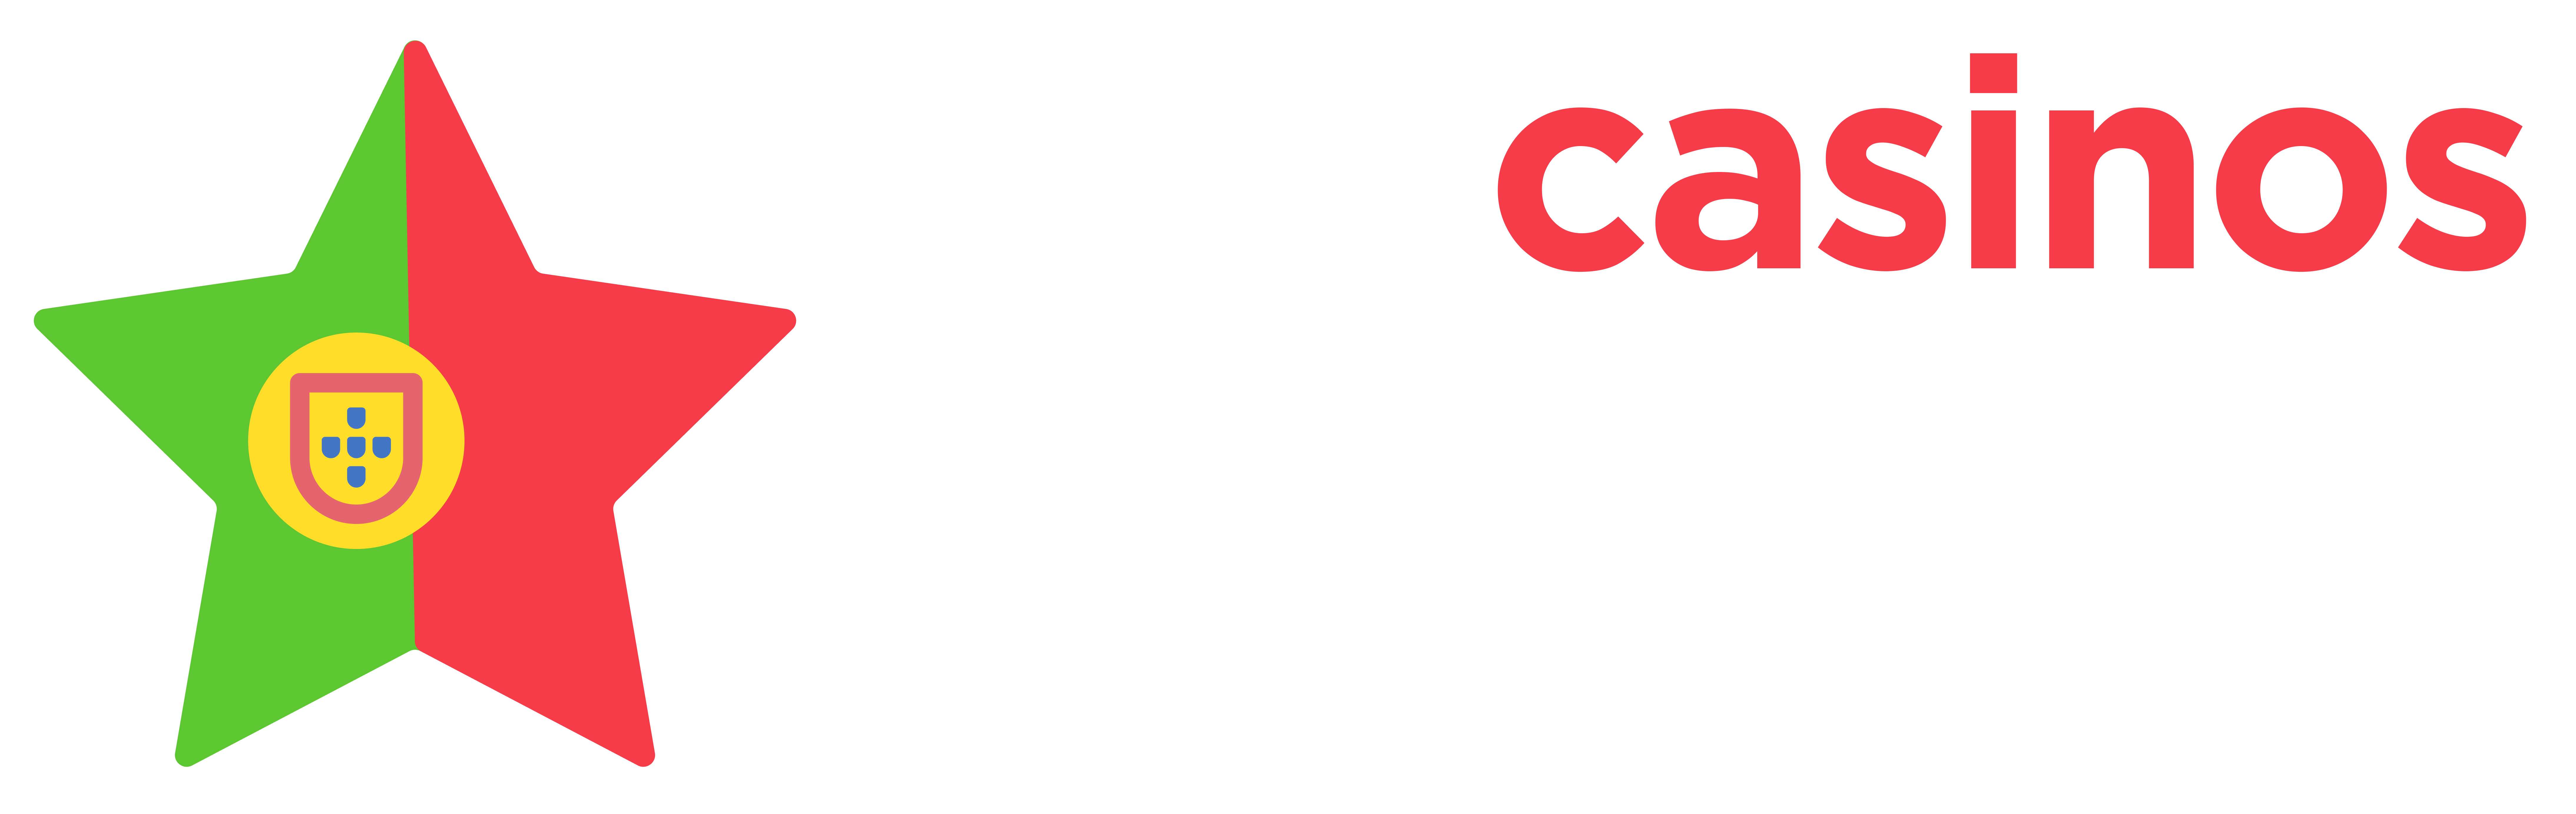 Top10casinos.com.pt